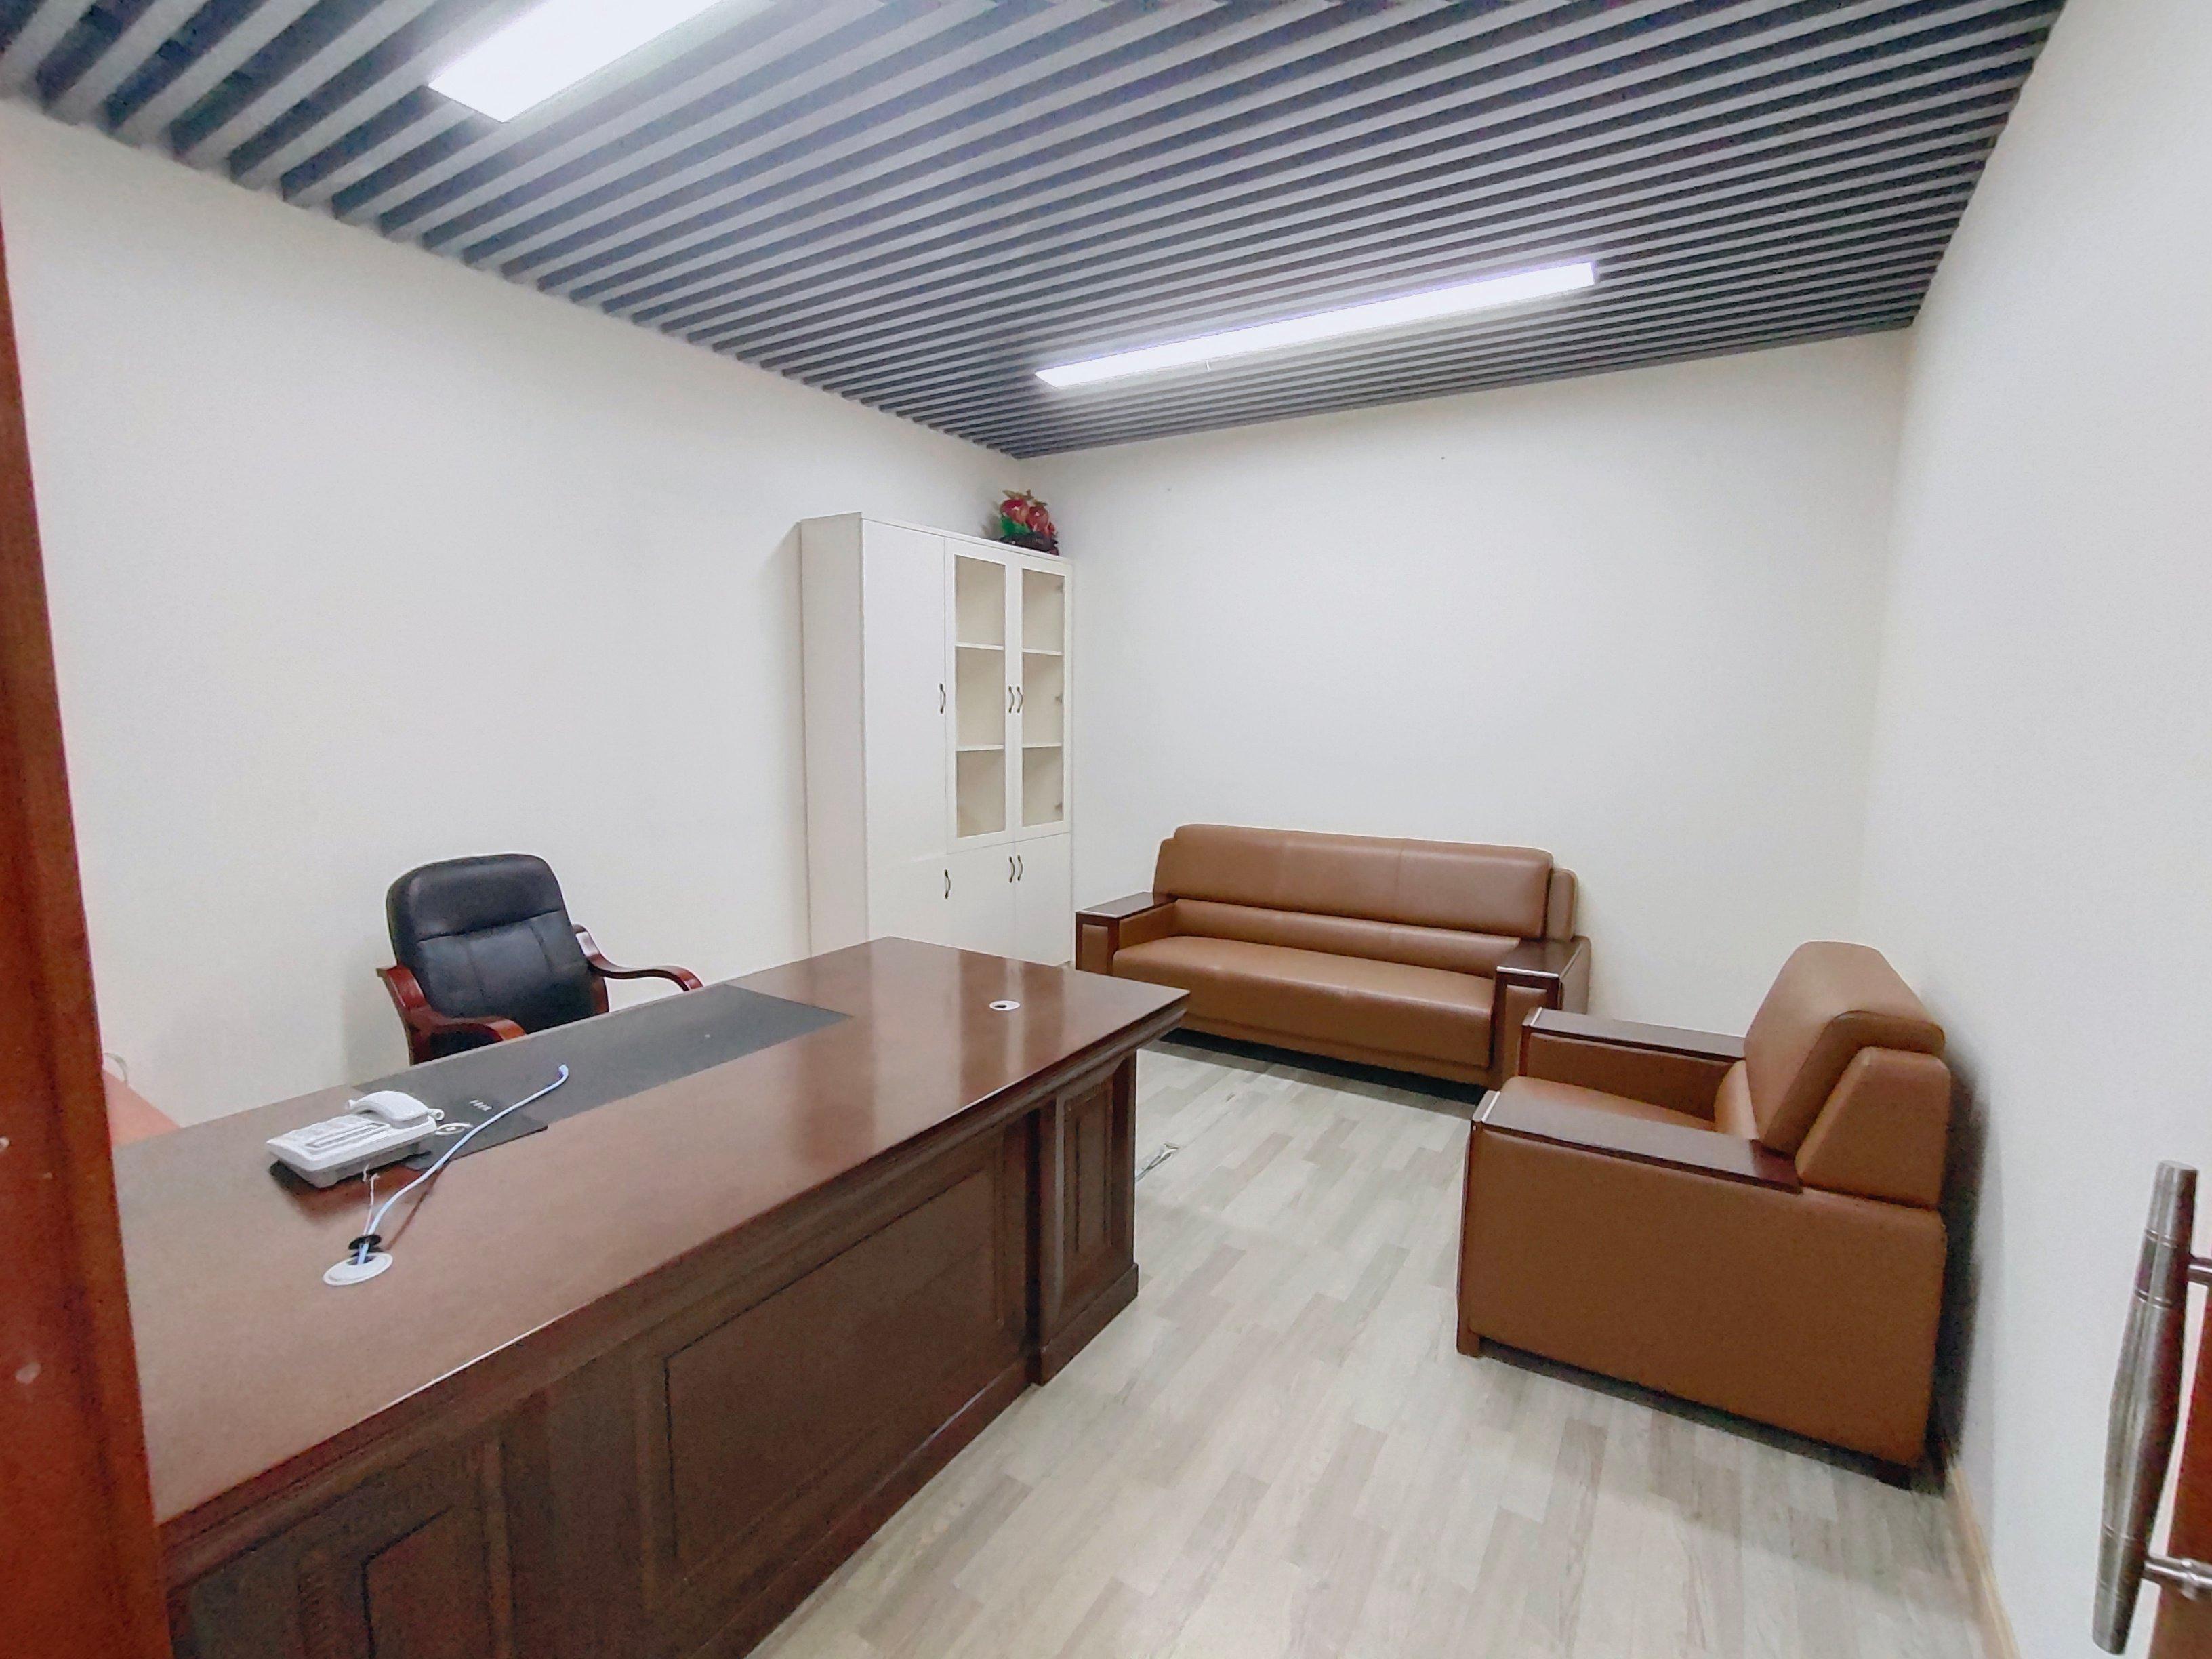 黄埔经济开发区荔联街道新出豪华装修办公室转让无需转让费。